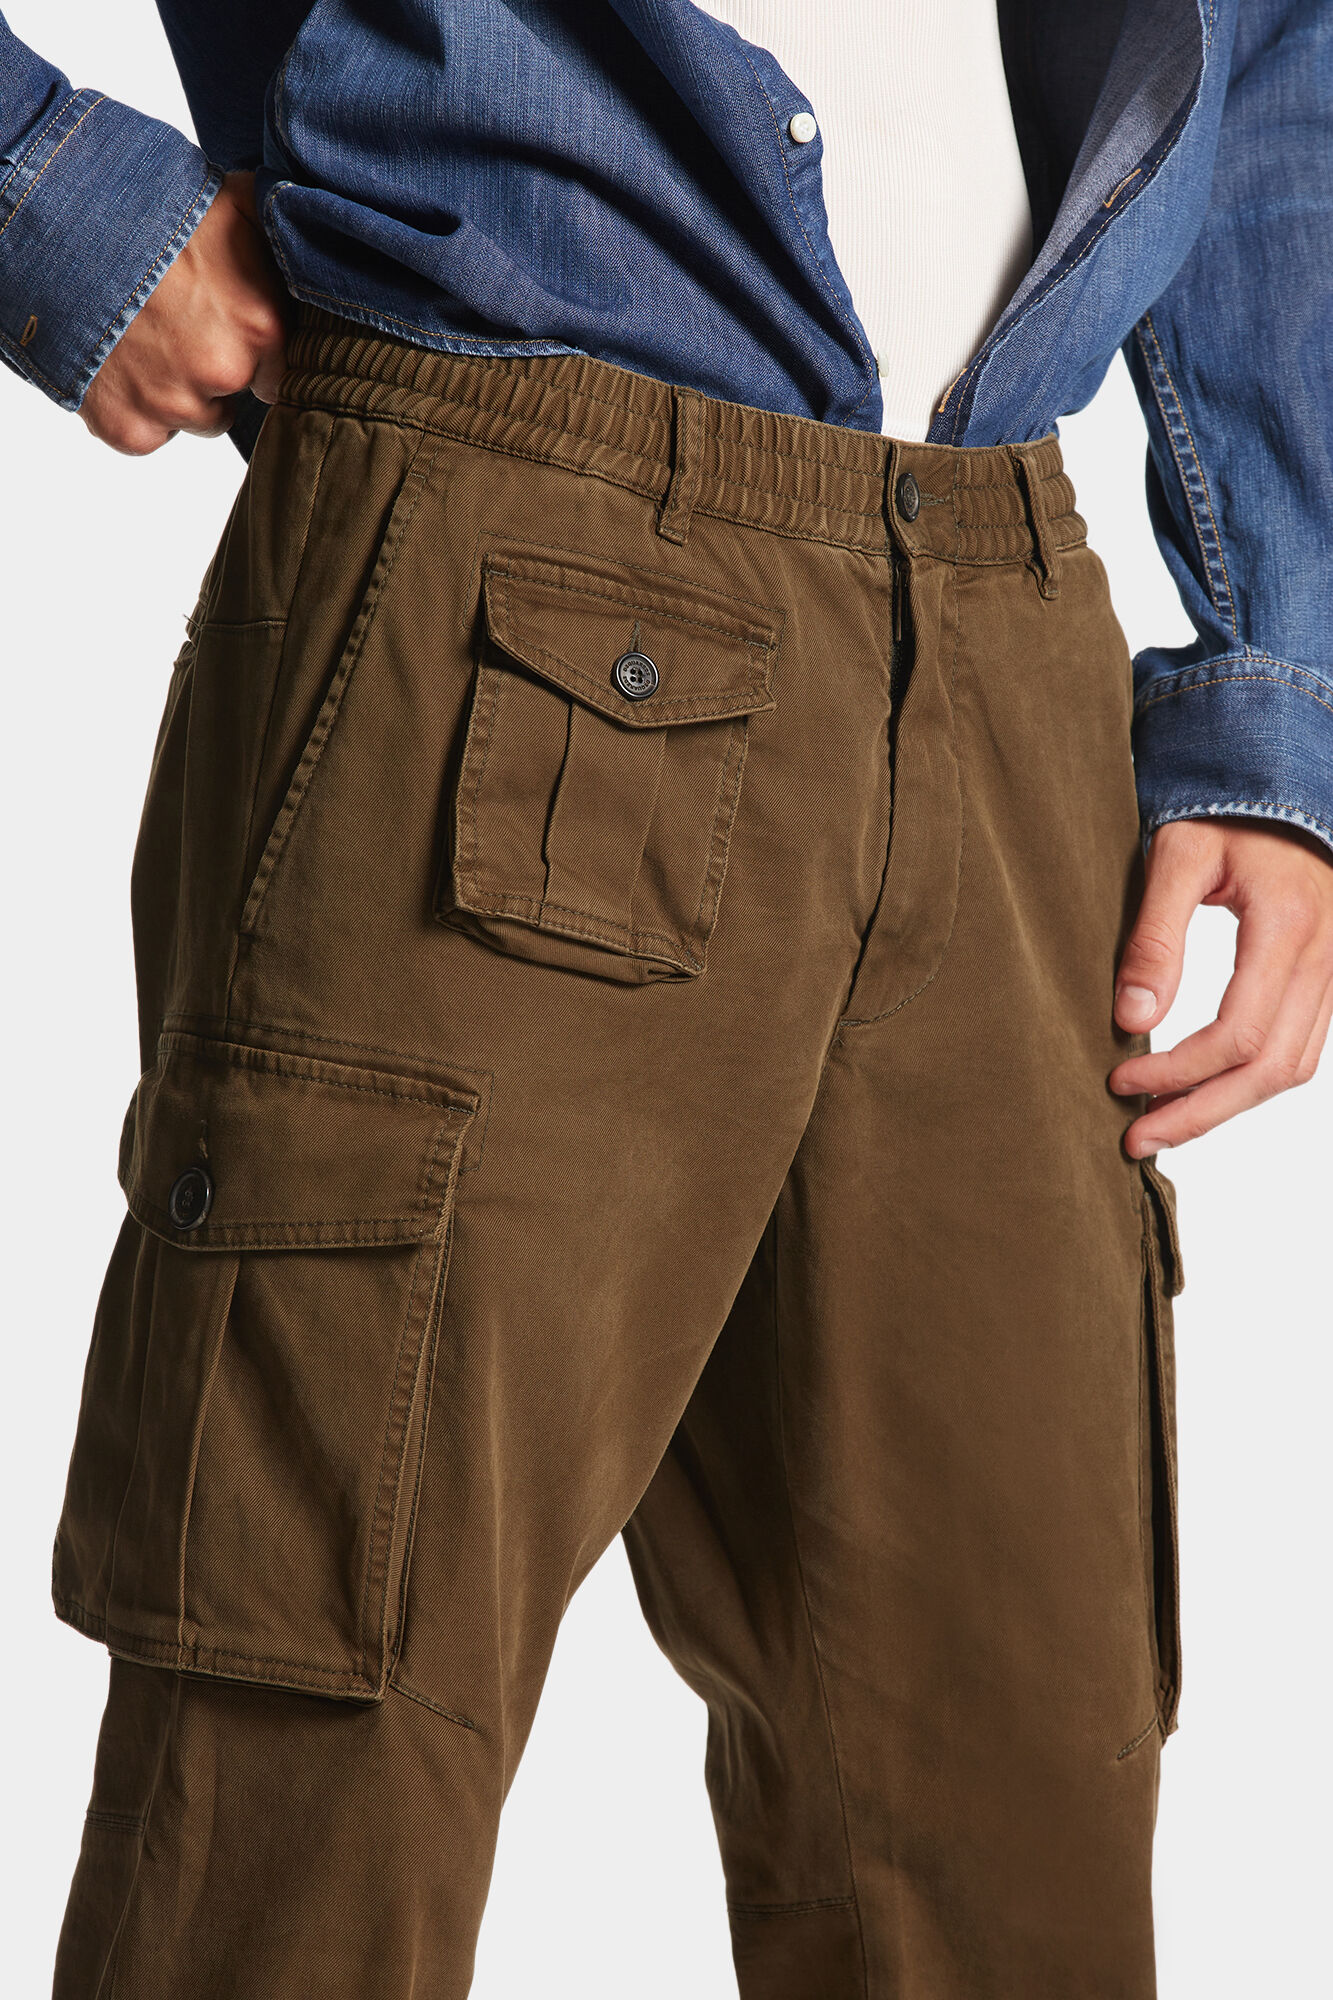 Buy Urban Legends Men's Regular Fit Casual Cargo Pants Open Black_26 at  Amazon.in